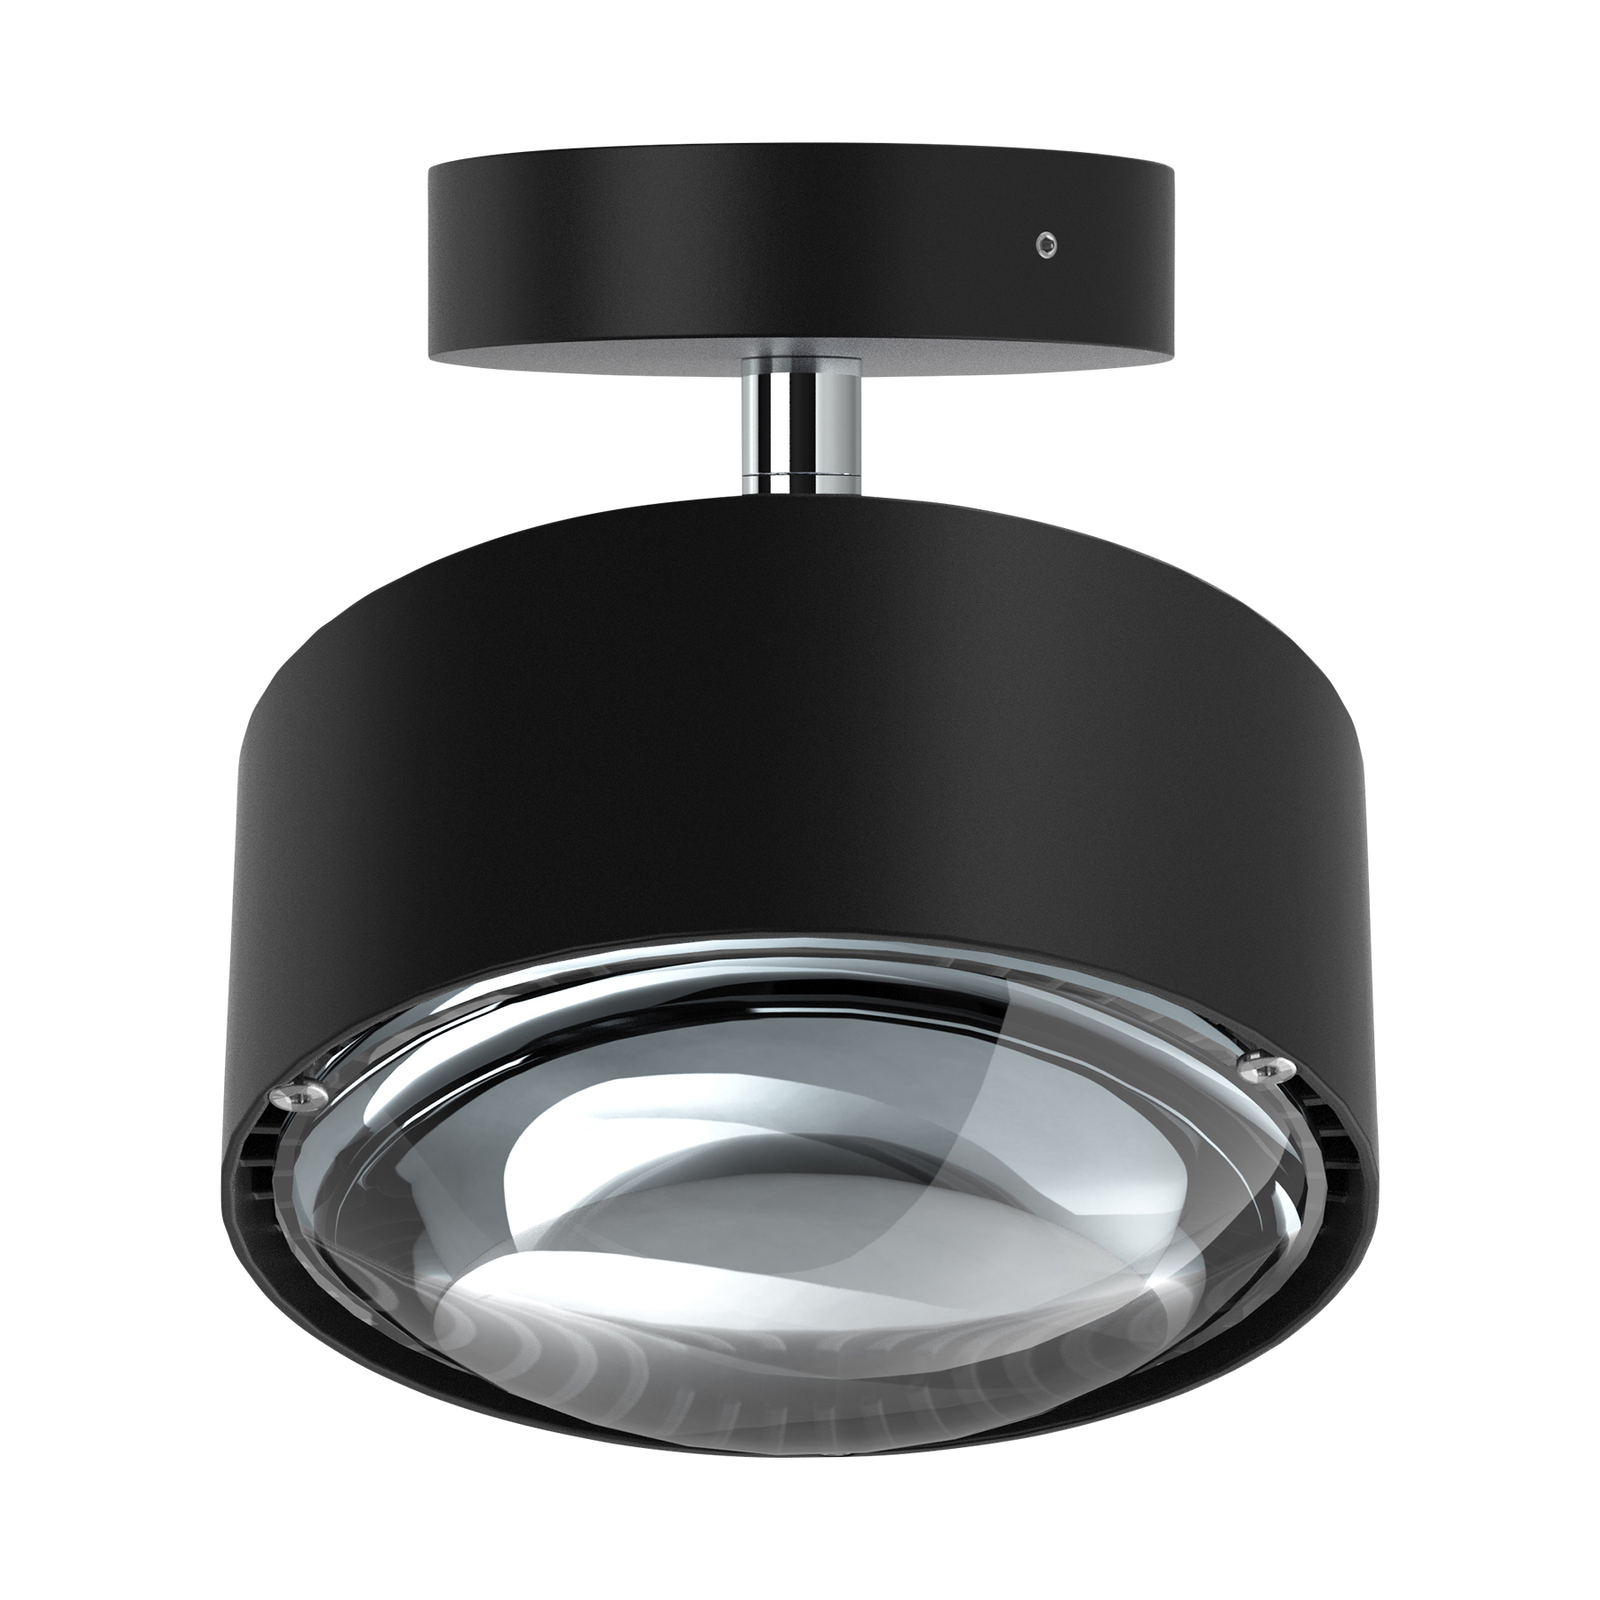 Puk Maxx Turn spot LED lentille claire 1 lampe noir mat